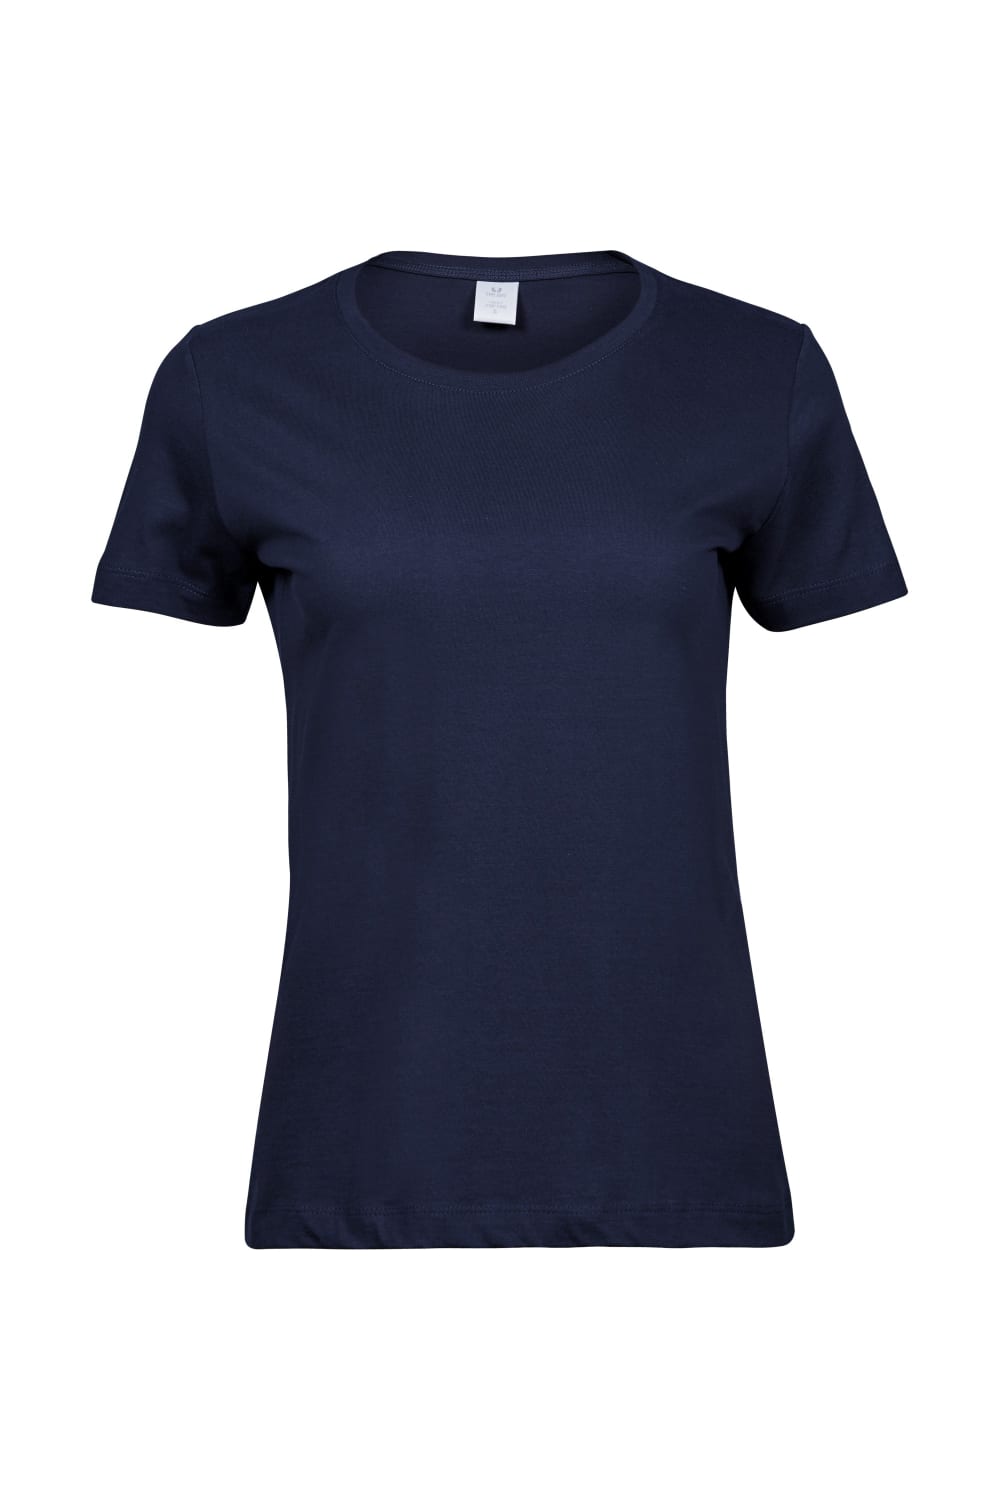 Tee Jays Womens/Ladies Sof T-Shirt (Navy)